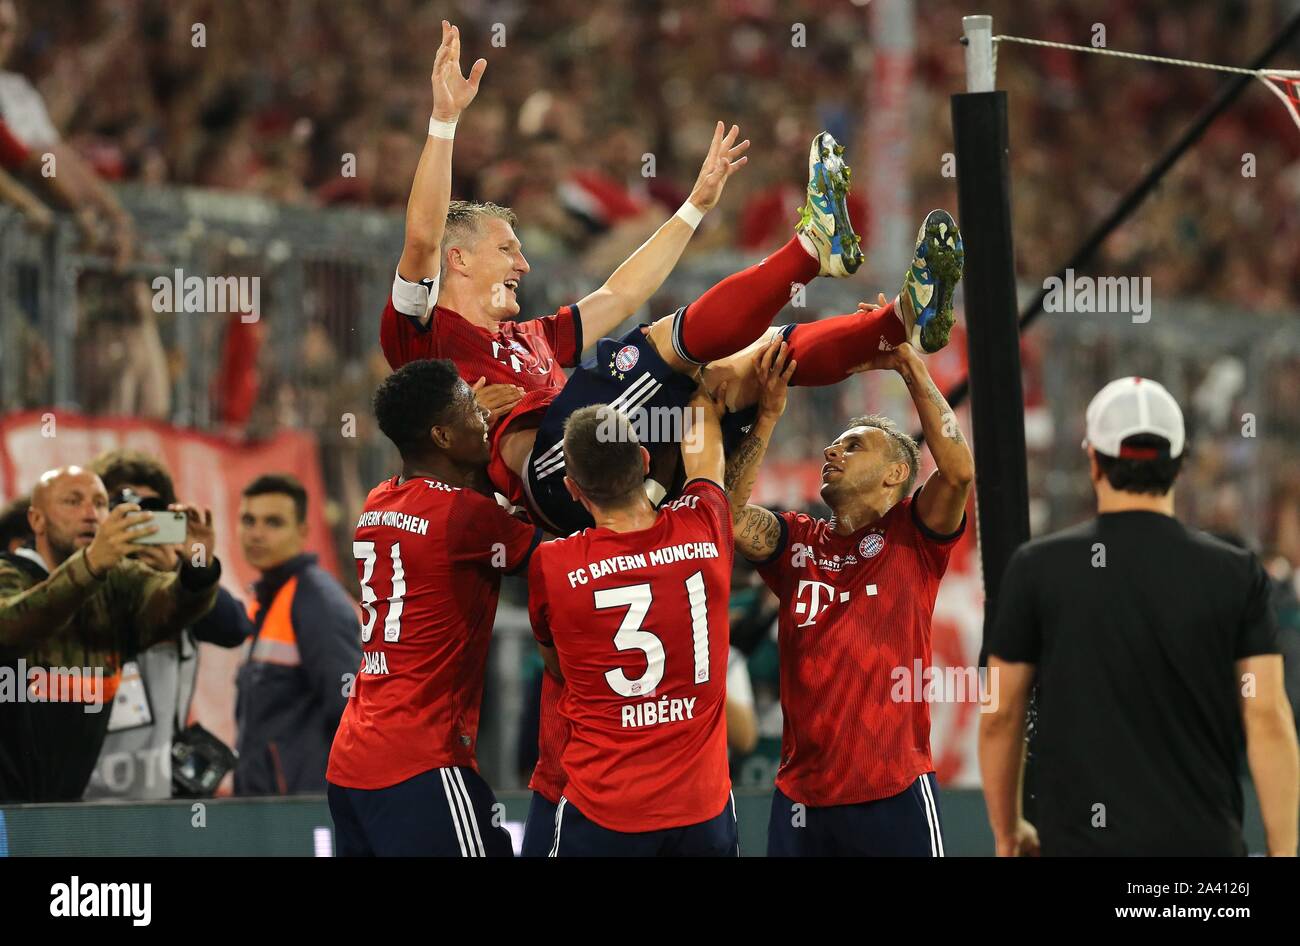 firo: 28.08.2018, Fuvuball, FC Bayern Munich - Chicago Fire farewell game Bastian Schweinsteiger 4: 0, Bastian Schweinsteiger, Bayern Munich, Munich, jubilation to 4: 0, is thrown up, Feature, Highlight, | usage worldwide Stock Photo